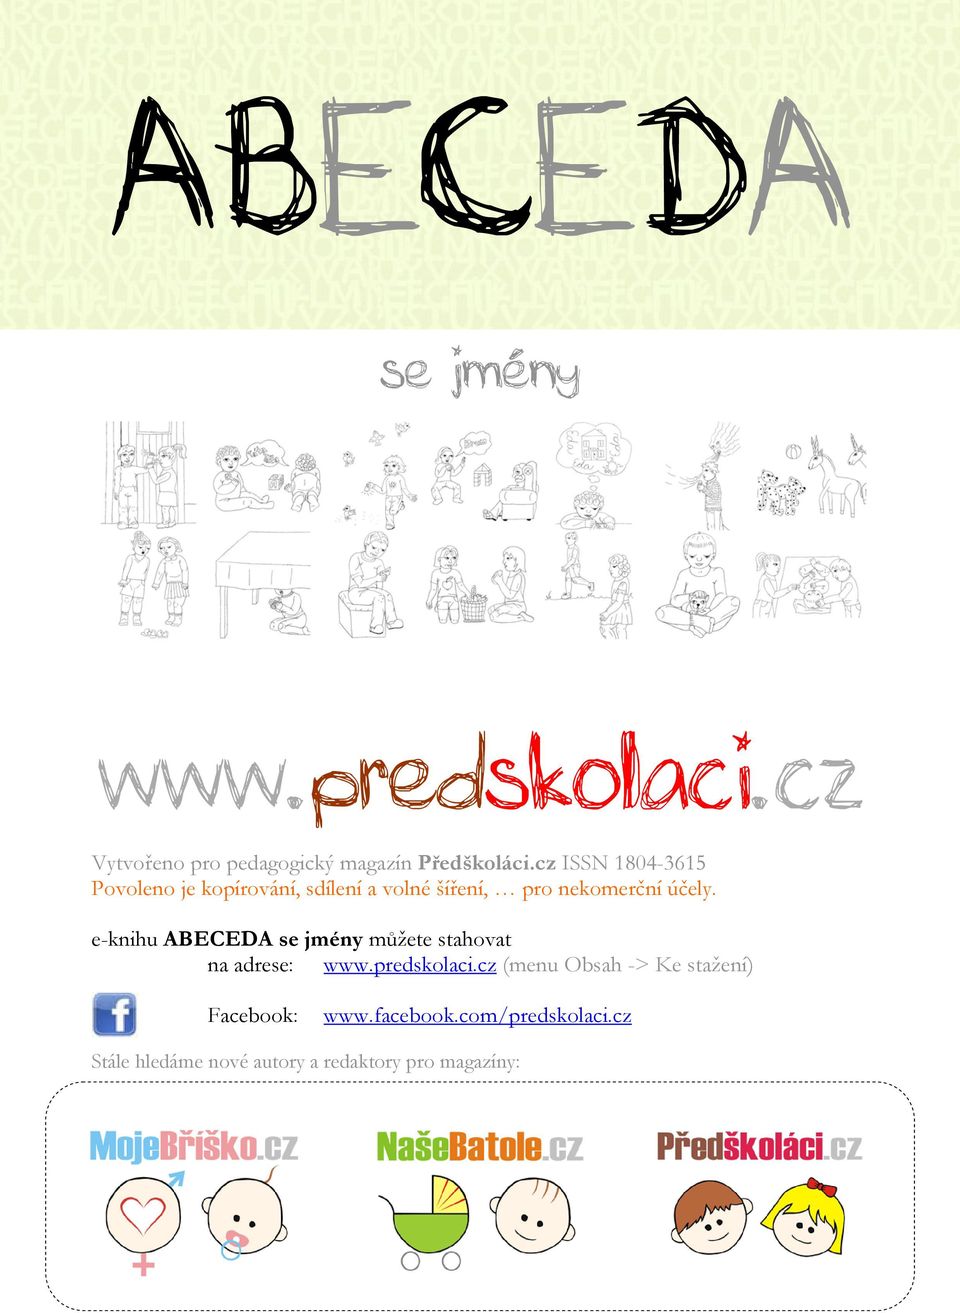 e-knihu ABECEDA se jmény můžete stahovat na adrese: www.predskolaci.